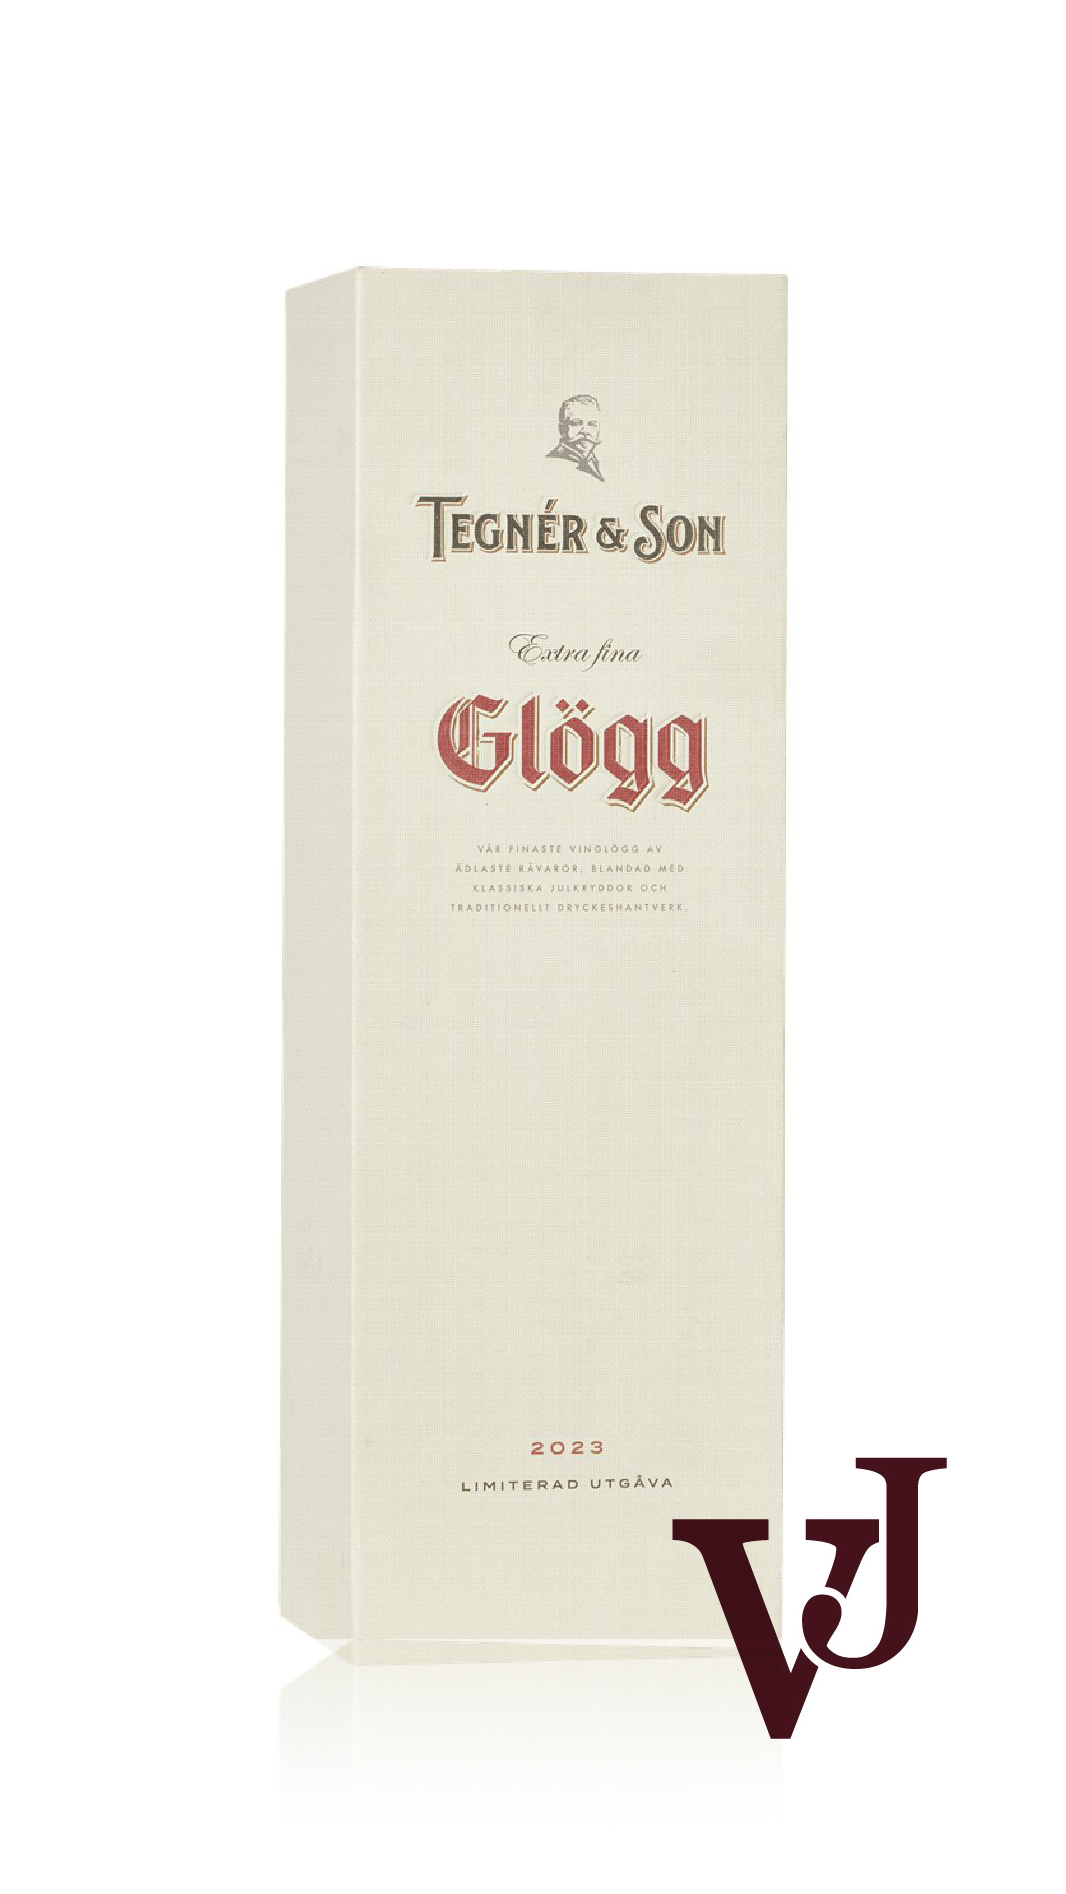 Övrigt Vin - Tegnér & Son Extra fina Starkvinsglögg artikel nummer 5508101 från producenten Tegnér Spirits & Wine AB från Sverige.